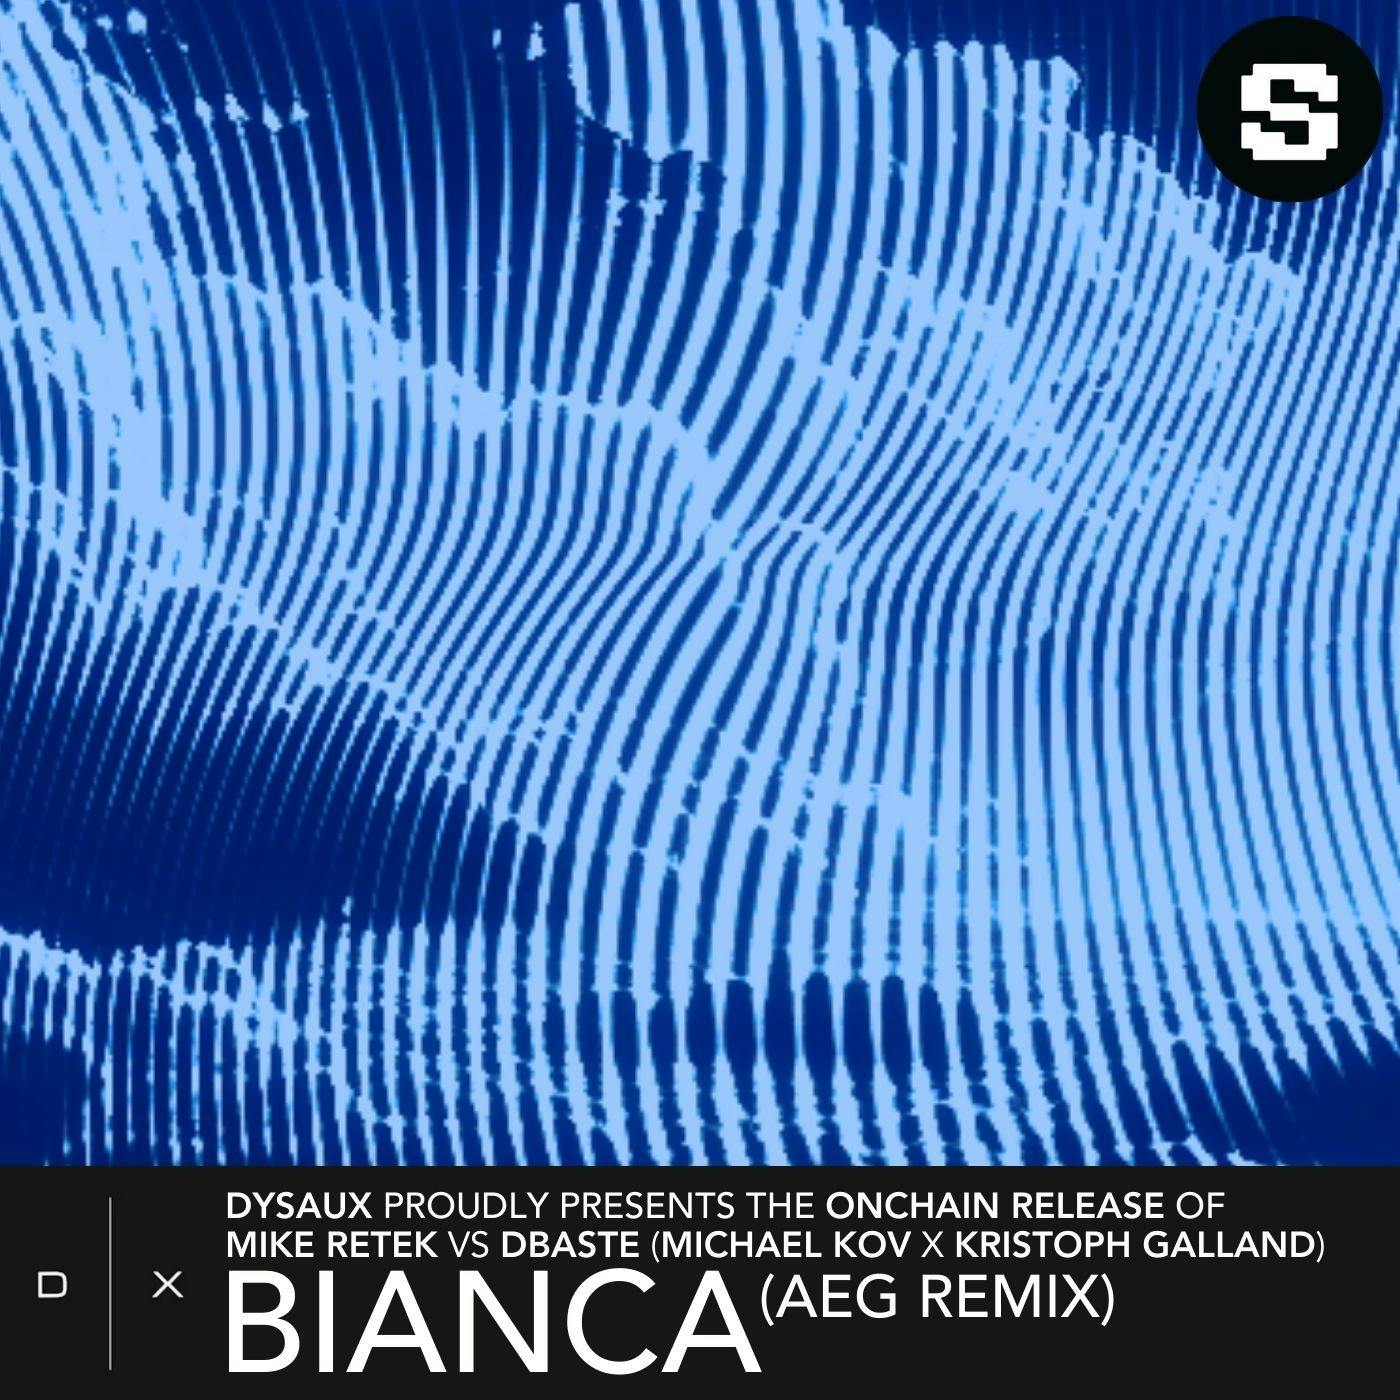 Bianca (AEG Remix)